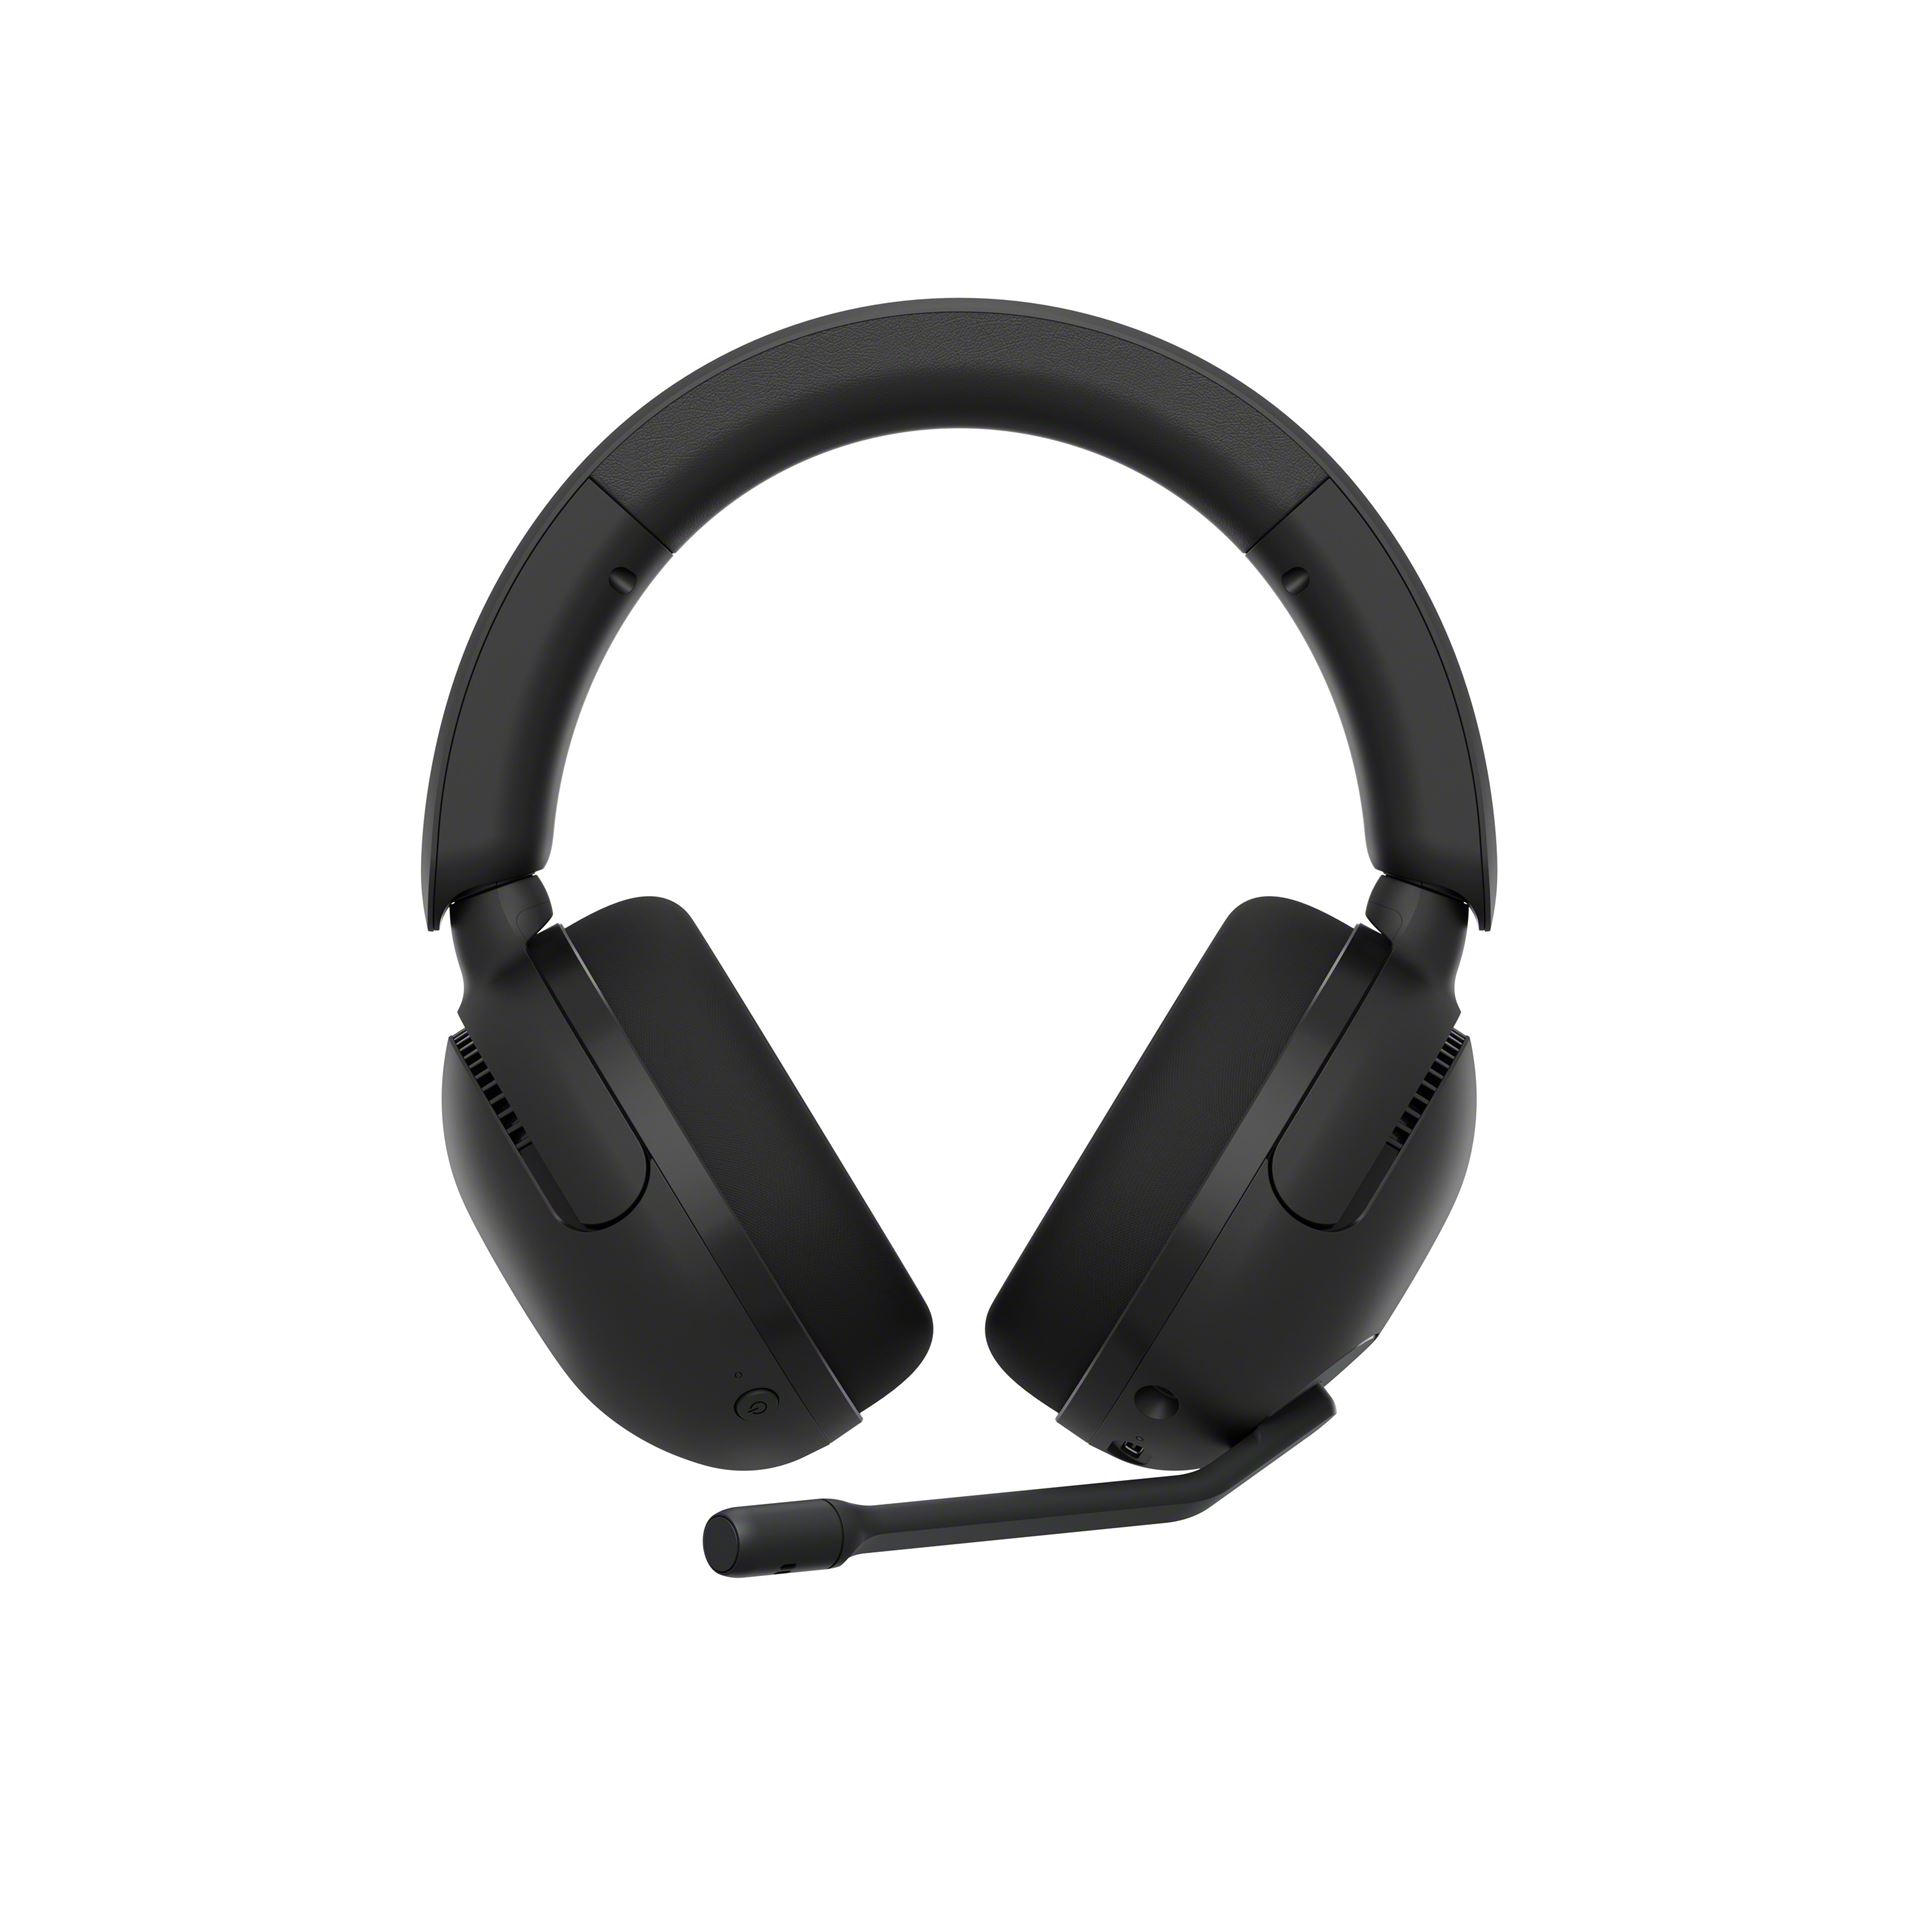 אוזניות גיימינג אלחוטיות - שחור INZONE H5 Wired and Wireless Gaming Headset Black